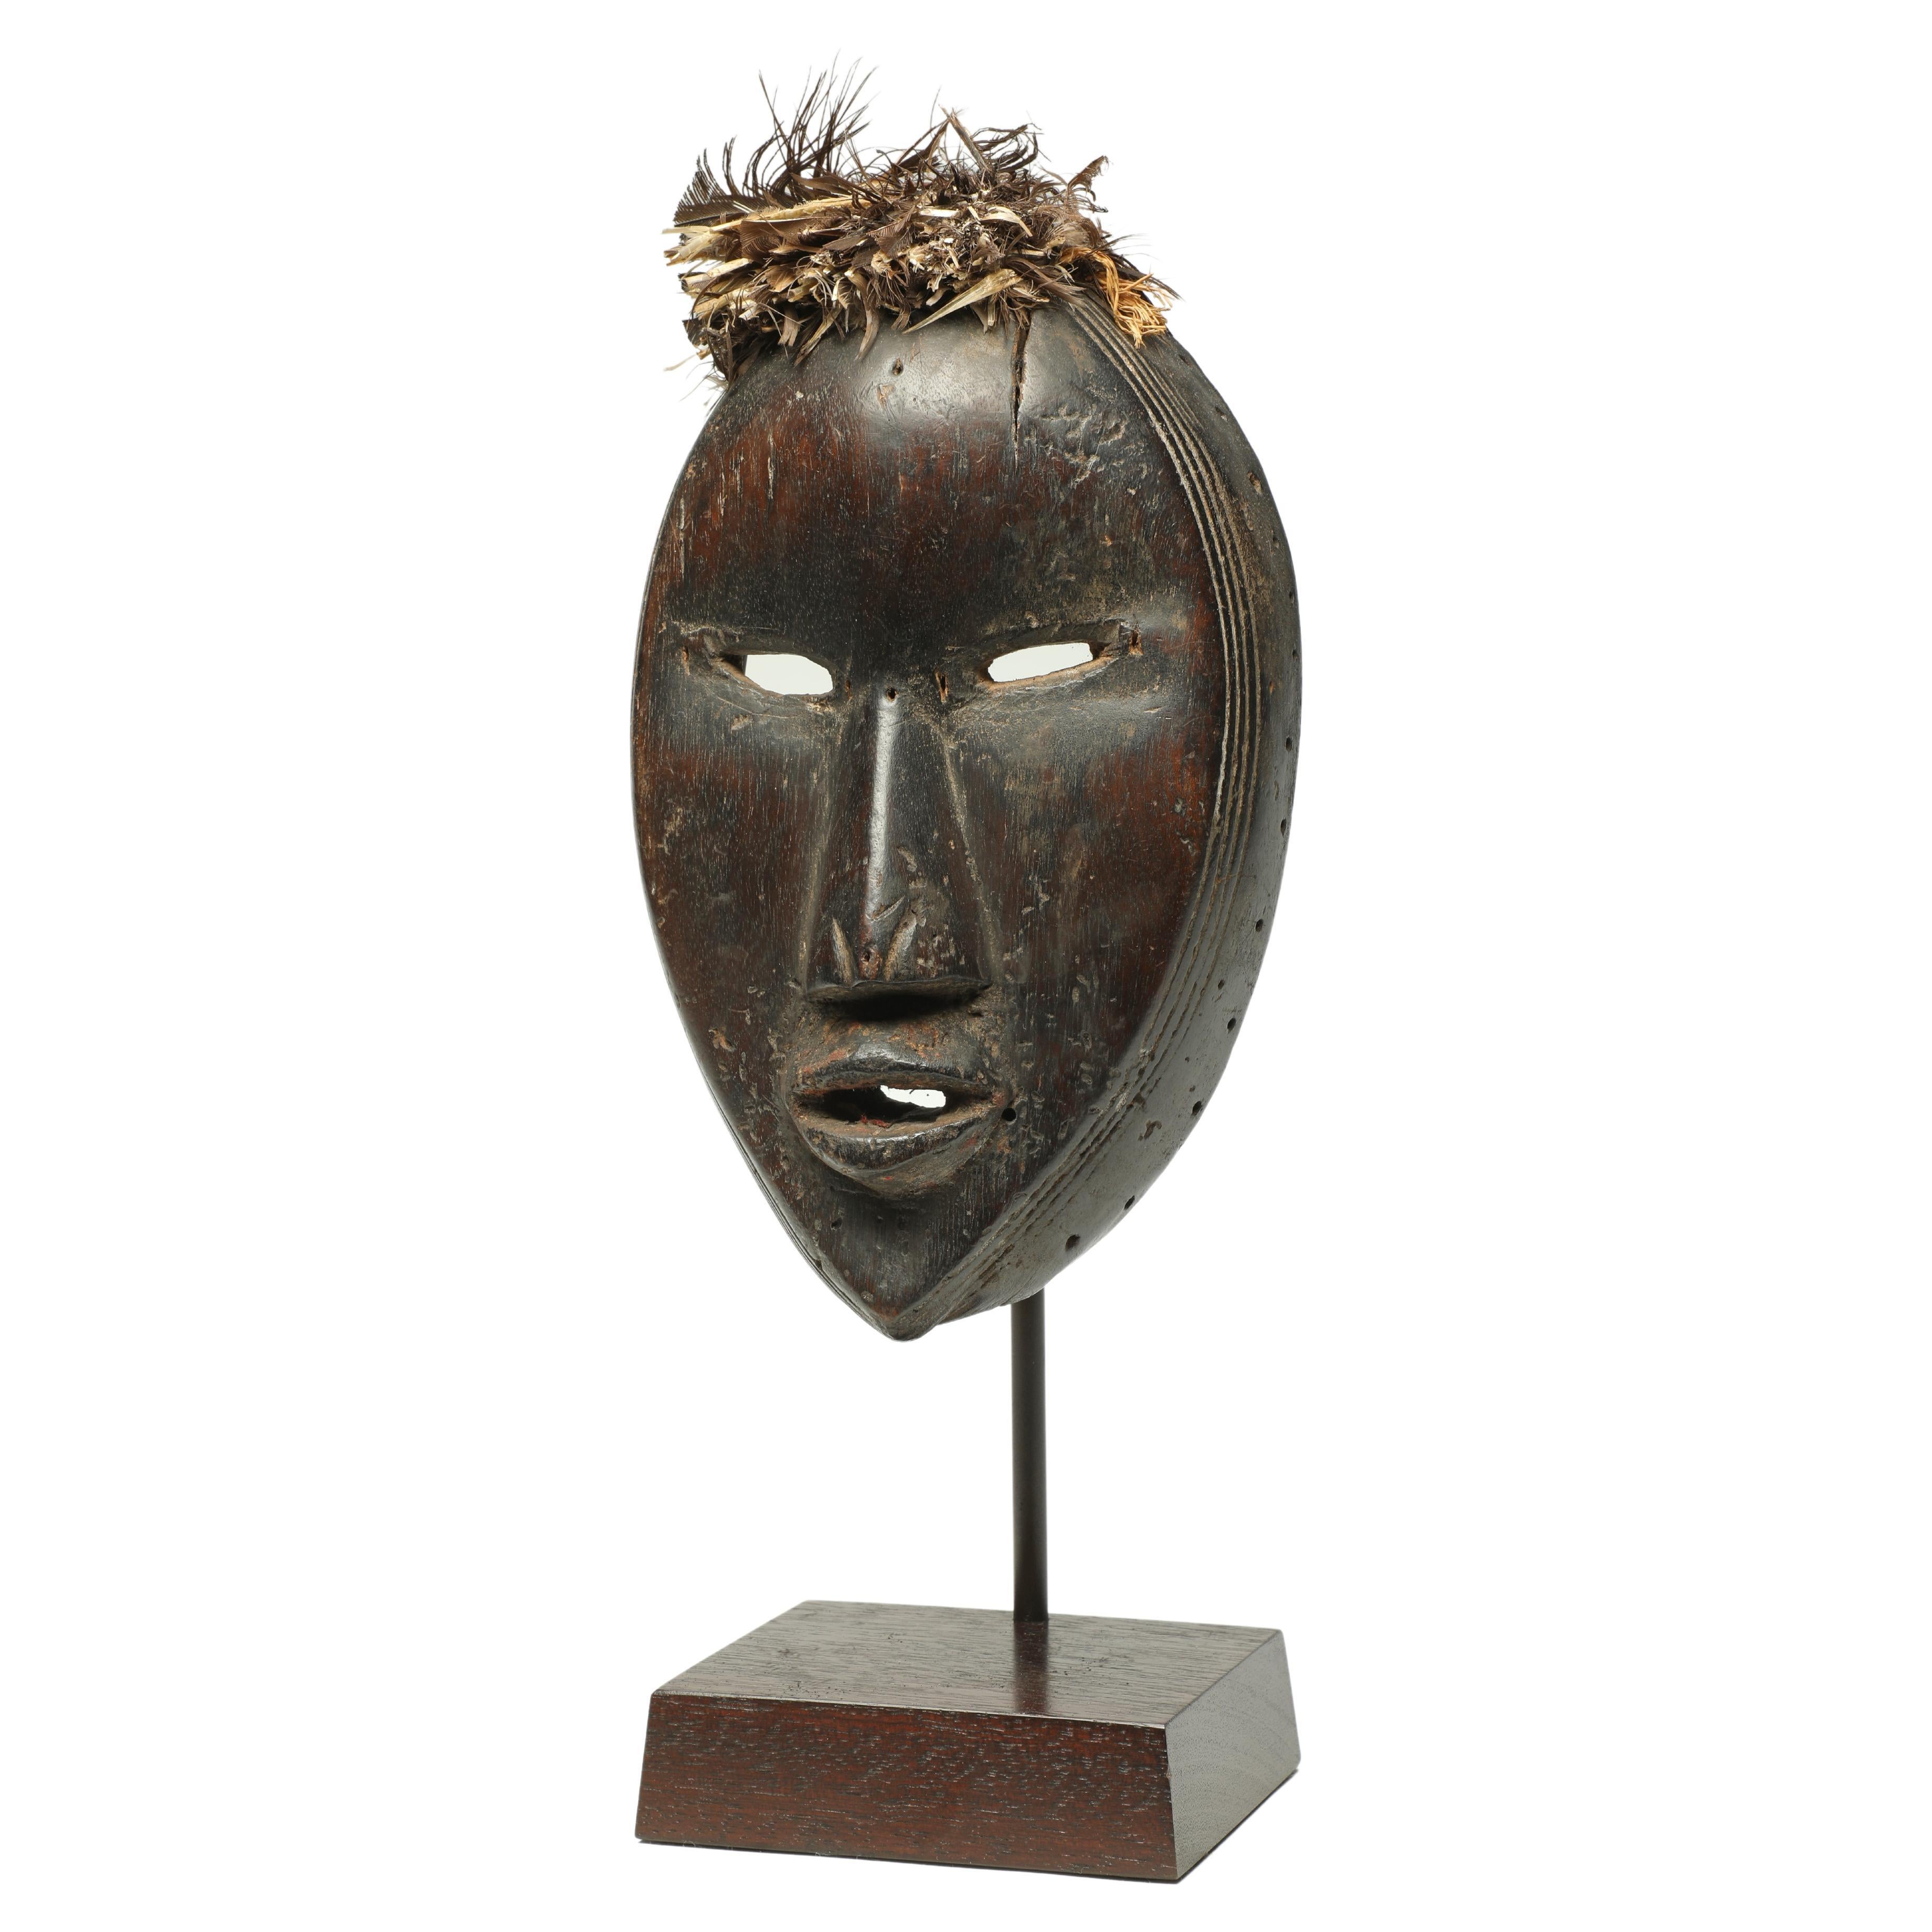 Maschera cubista classica espressiva di Dan dei primi anni del XX secolo Liberia, Africa